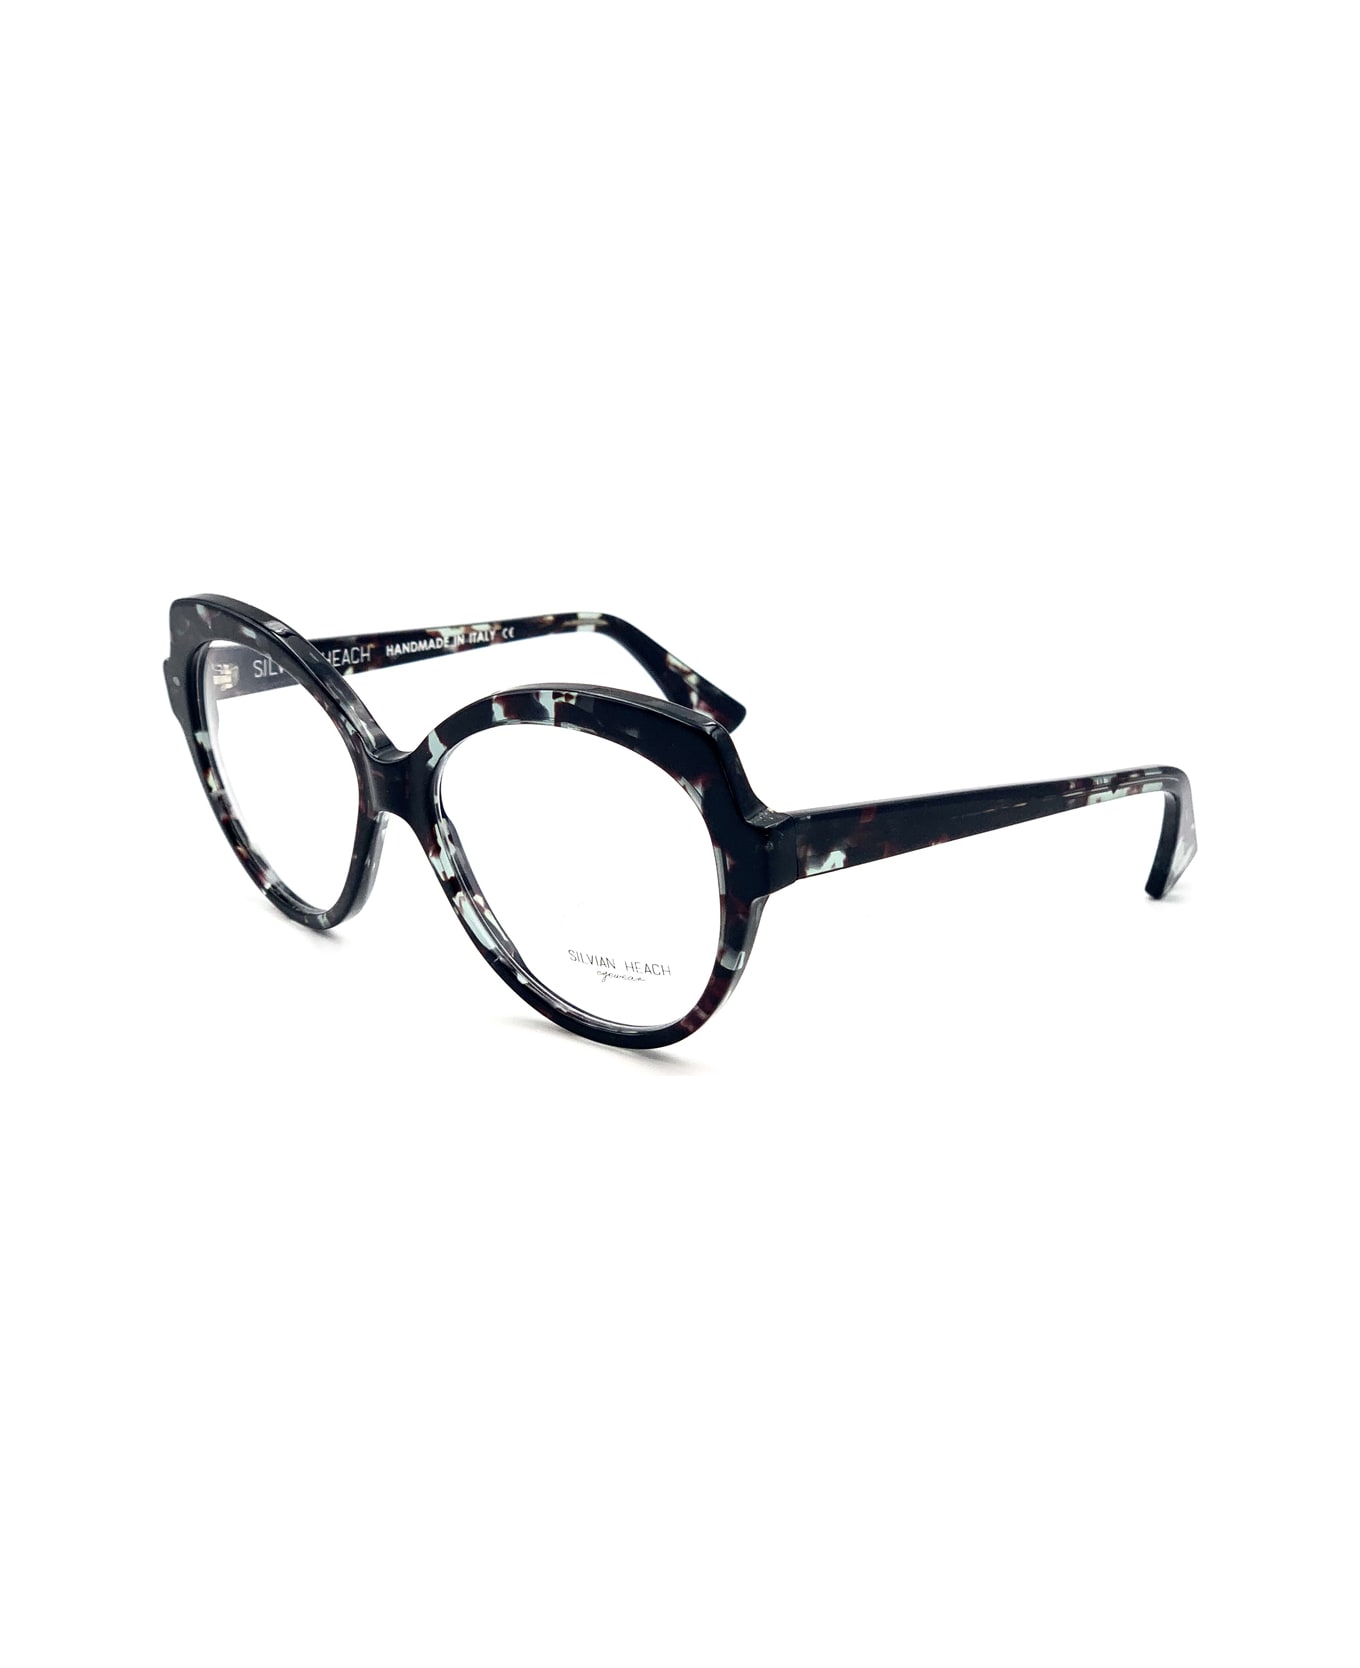 Silvian Heach Cosmopolitan Glasses - Nero